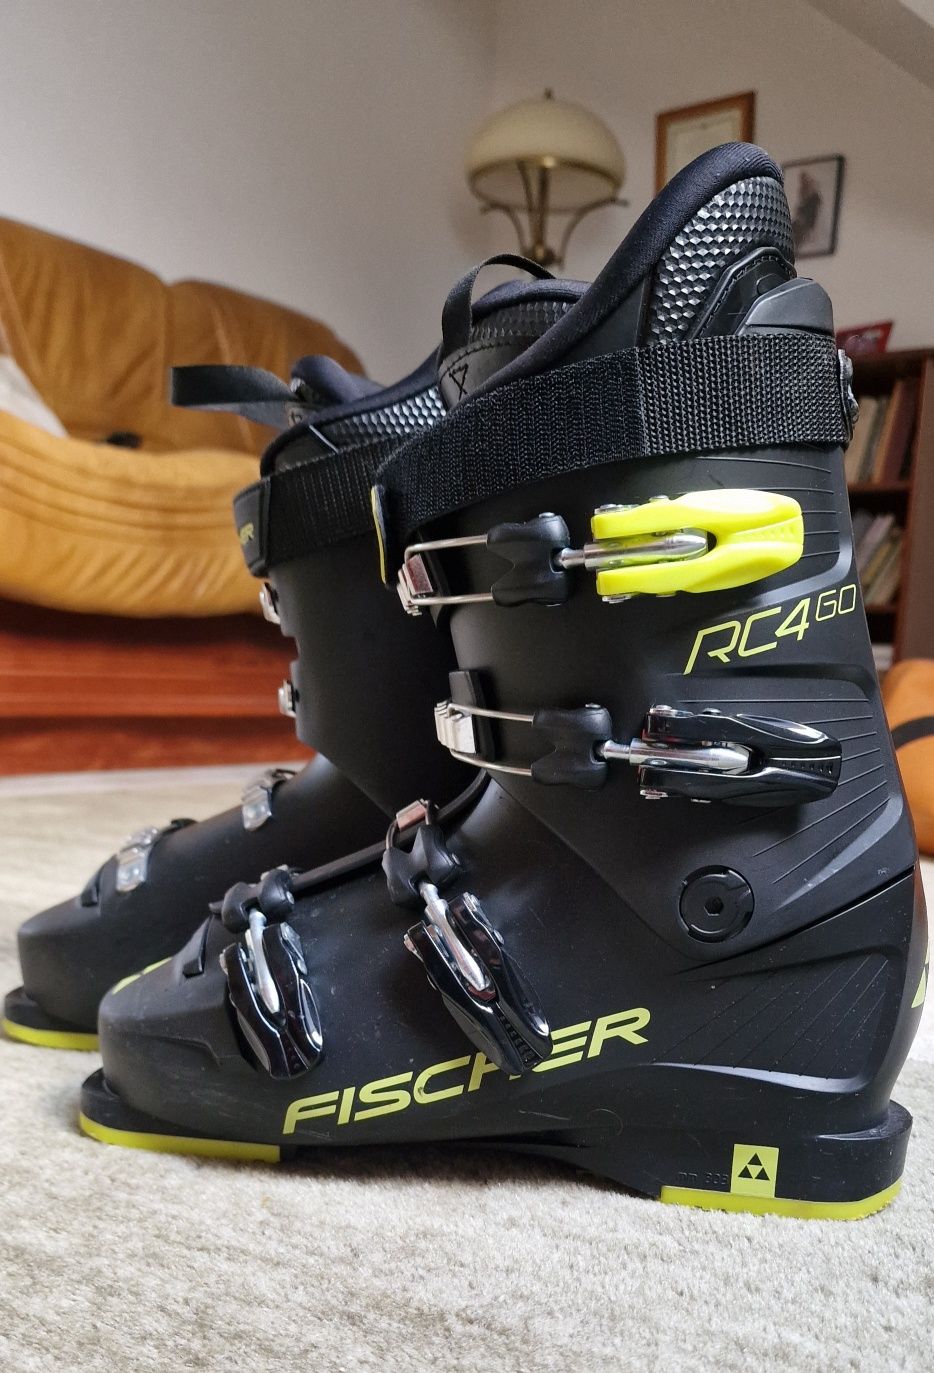 Buty narciarskie Fischer RC4 60 rozmiar 26,5